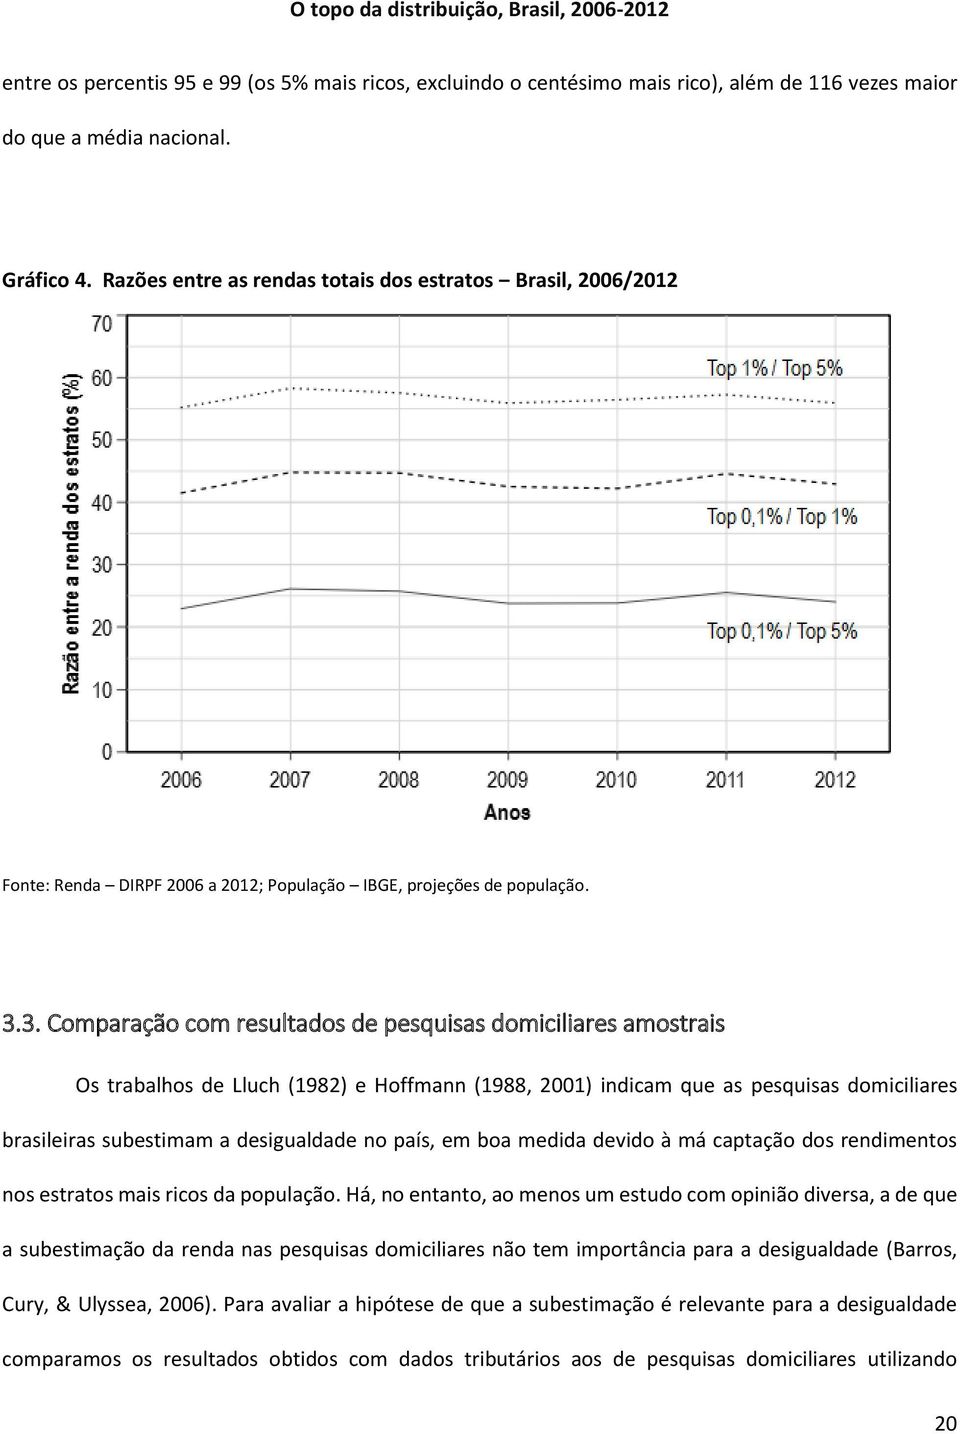 3. Comparação com resultados de pesquisas domiciliares amostrais Os trabalhos de Lluch (1982) e Hoffmann (1988, 2001) indicam que as pesquisas domiciliares brasileiras subestimam a desigualdade no